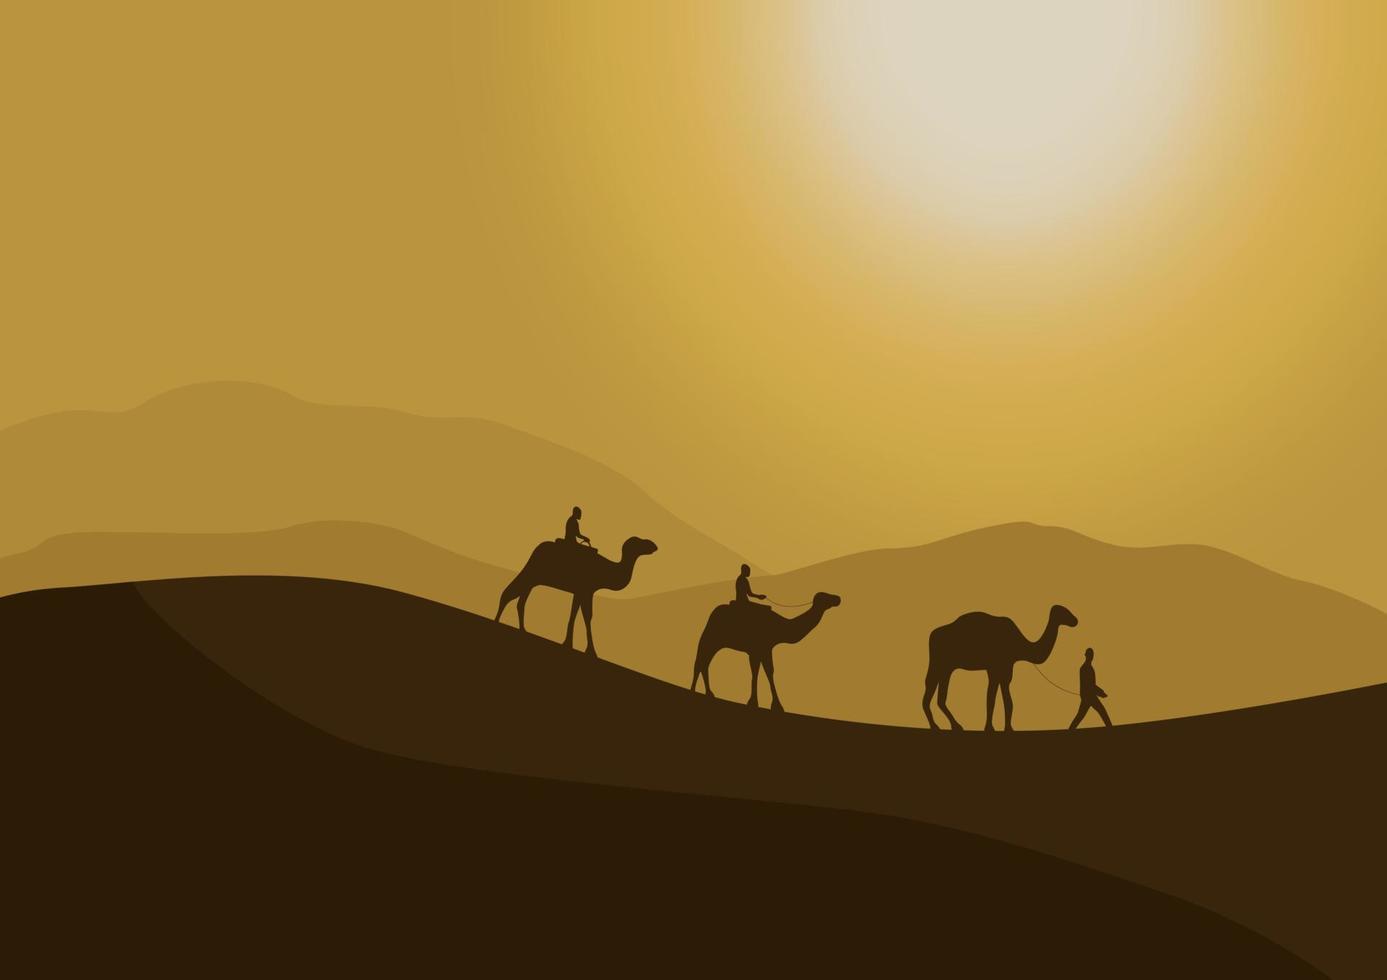 silhouet van kamelen in de woestijn met zonlicht, vector illustratie.